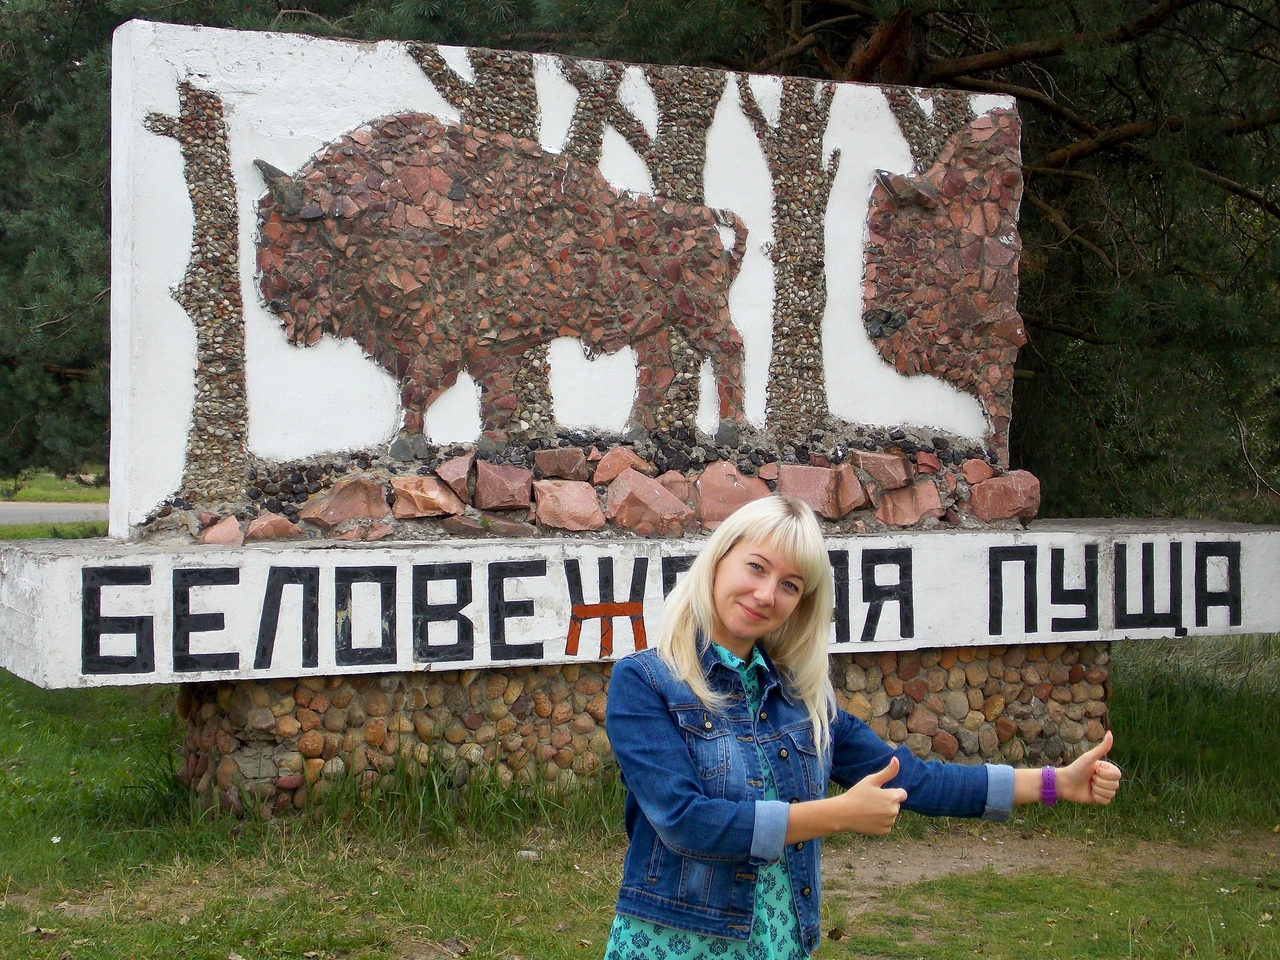 "Может, статус Новогодней столицы пойдет Рязани на пользу": путешественница рассказала о поездках по России